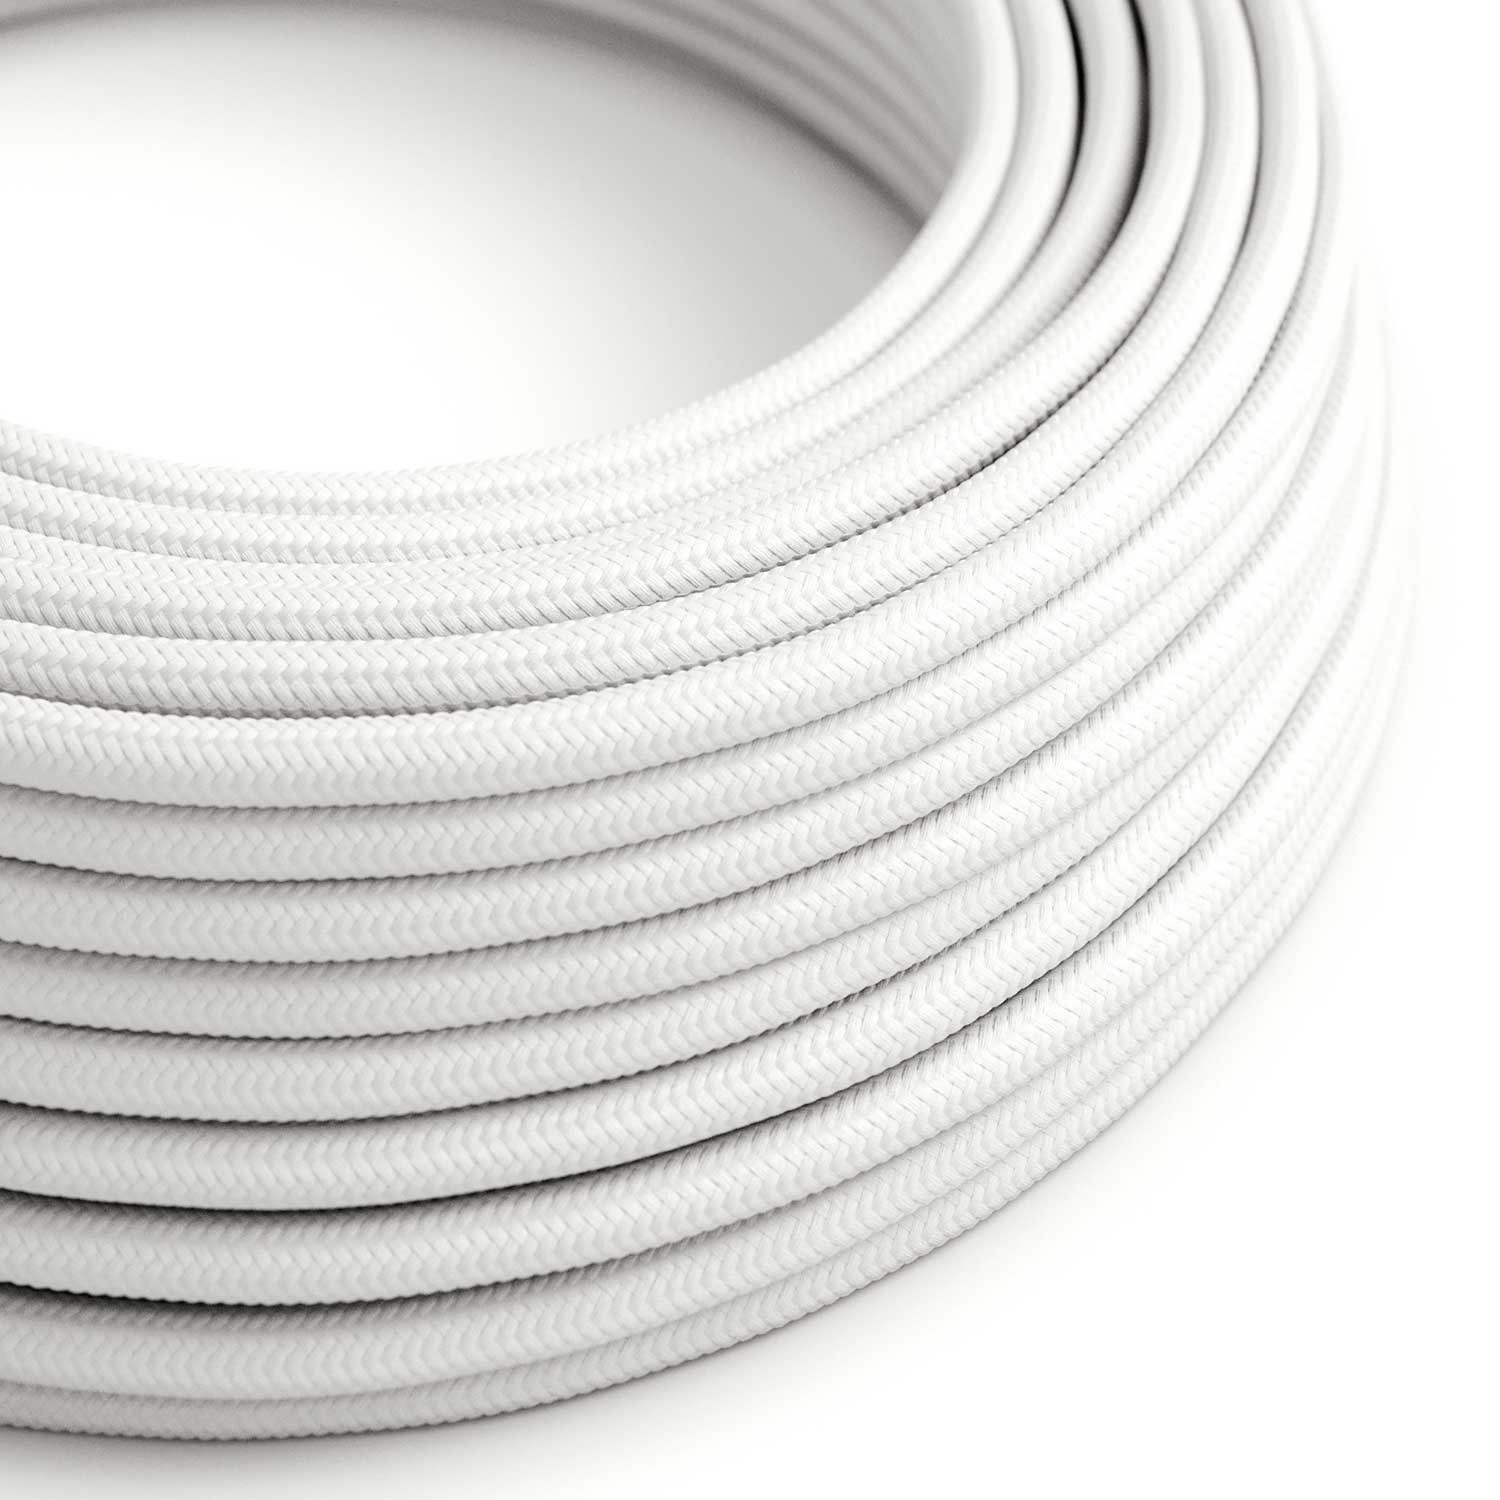 Ultra puha szilikon kábel fényes fehér szövet borítással - RM01 kerek 2x0,75 mm